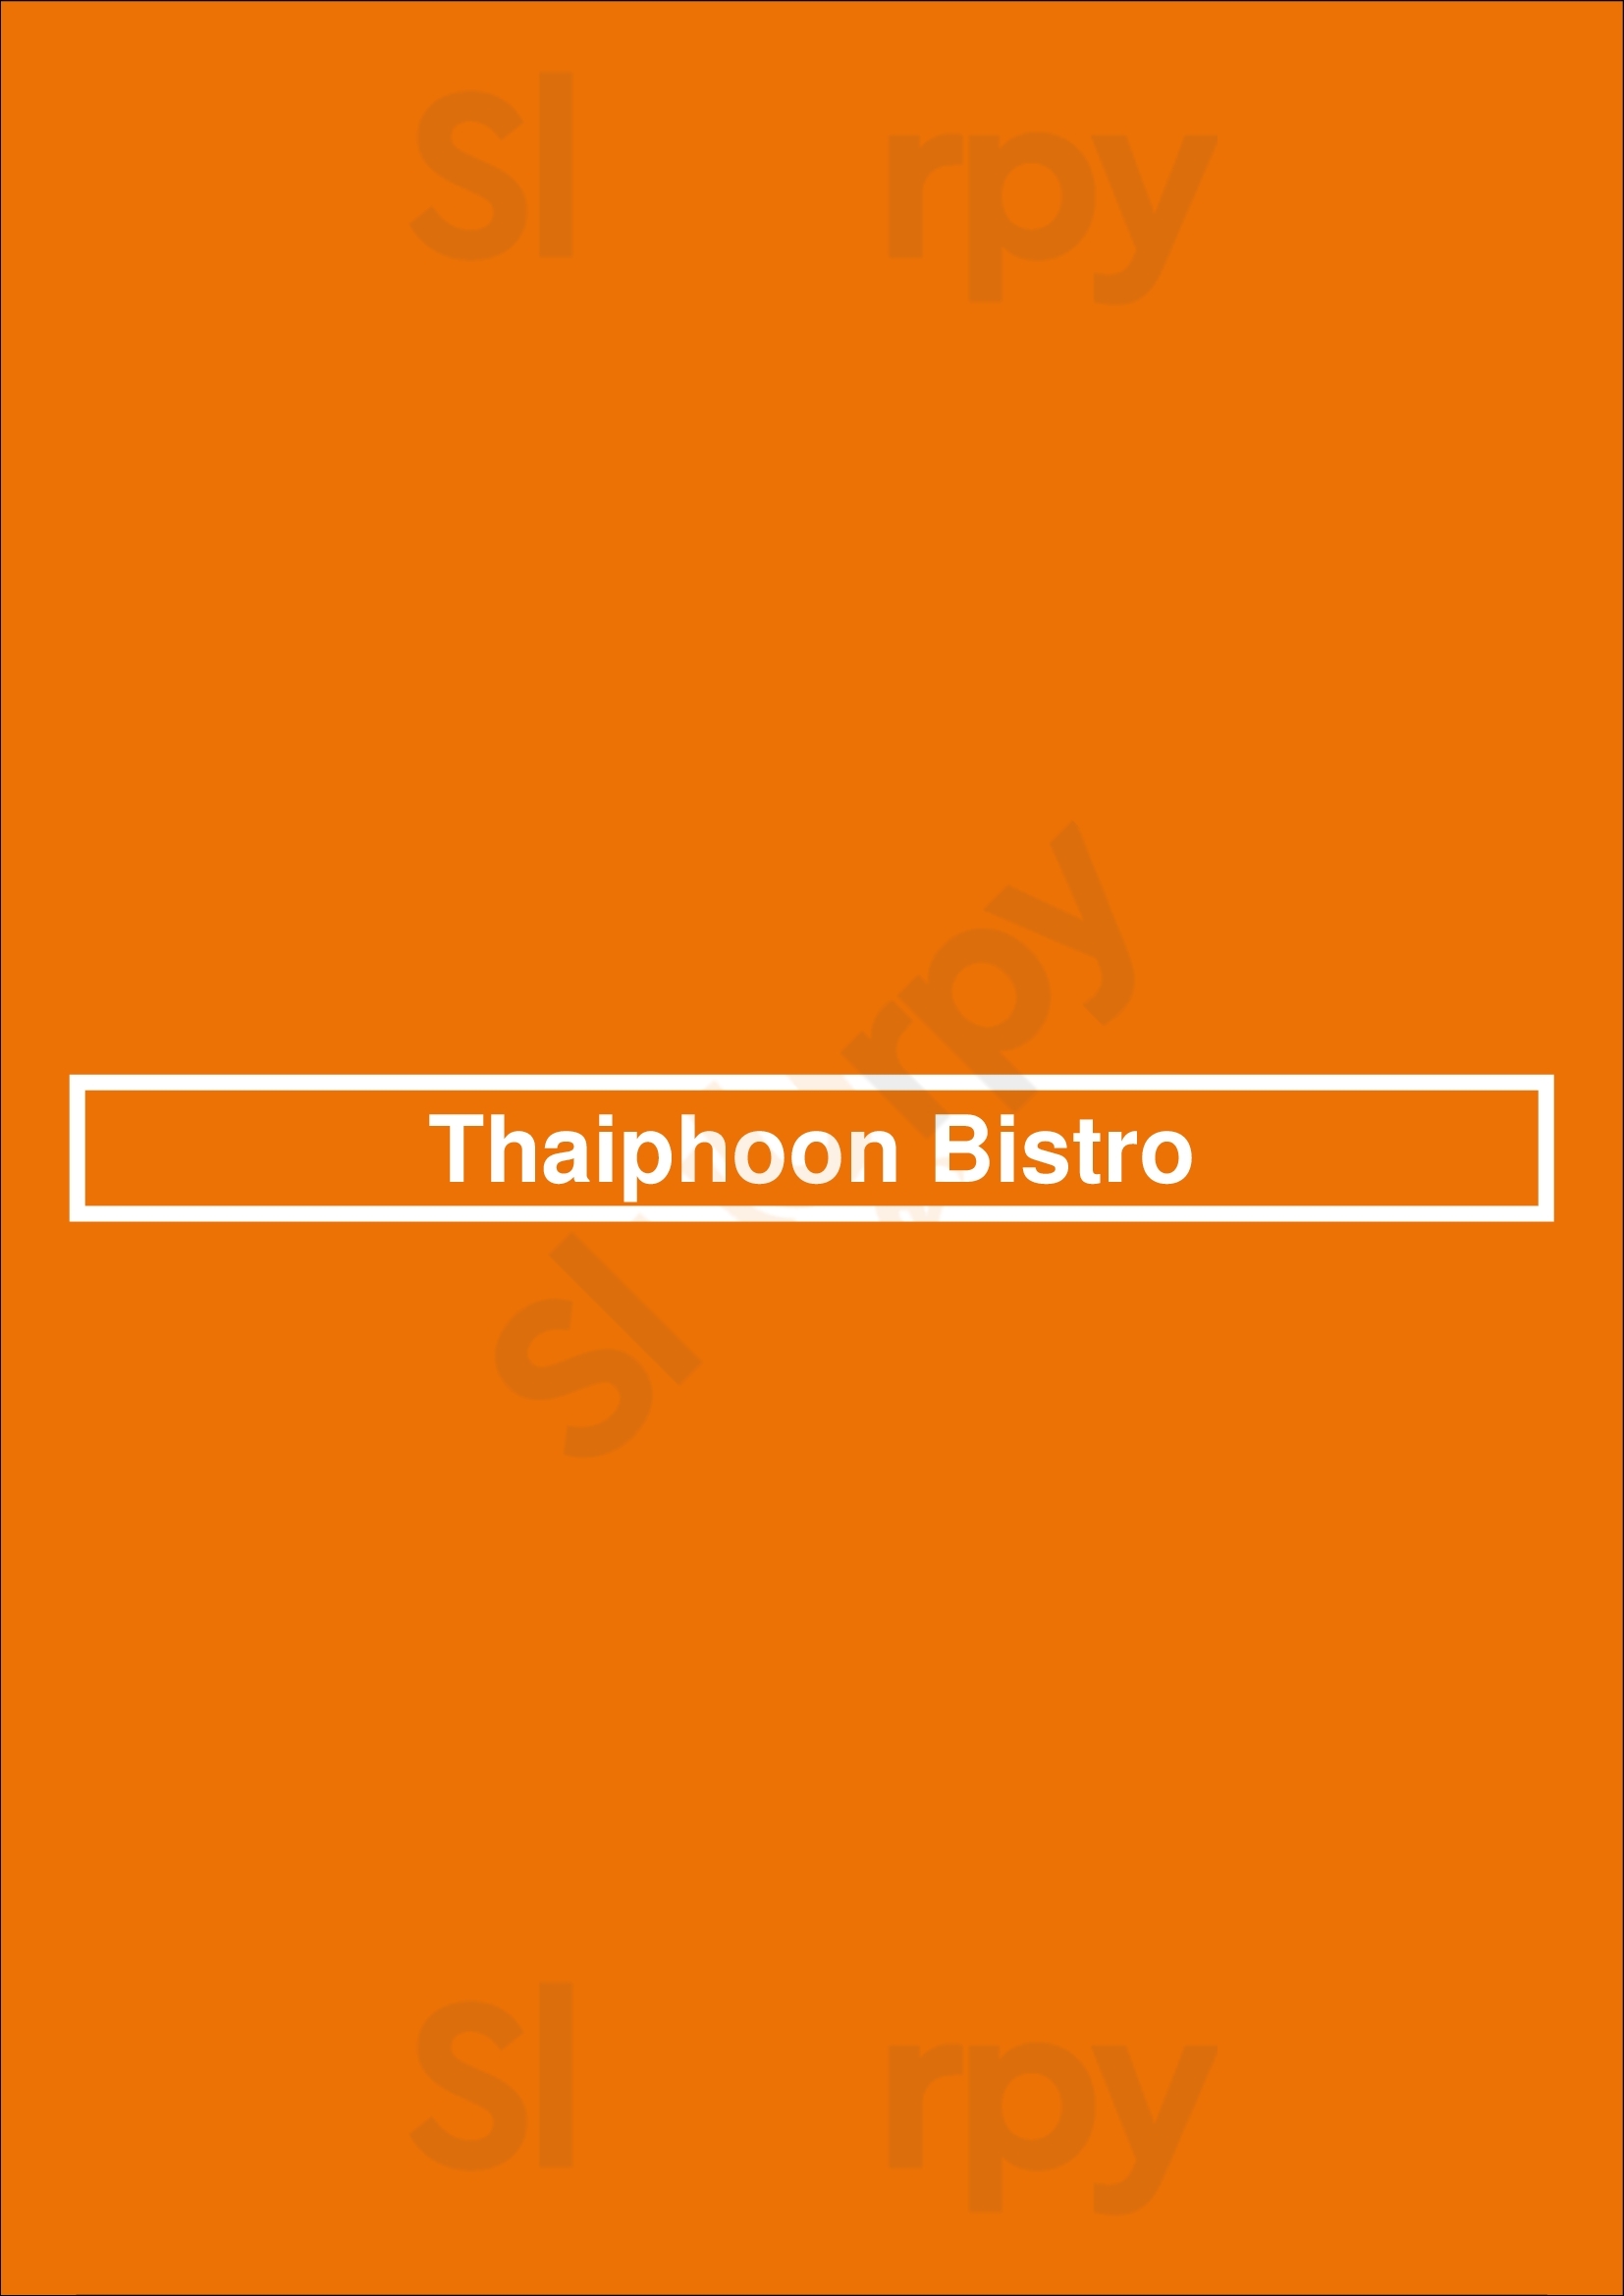 Thaiphoon Bistro Raleigh Menu - 1